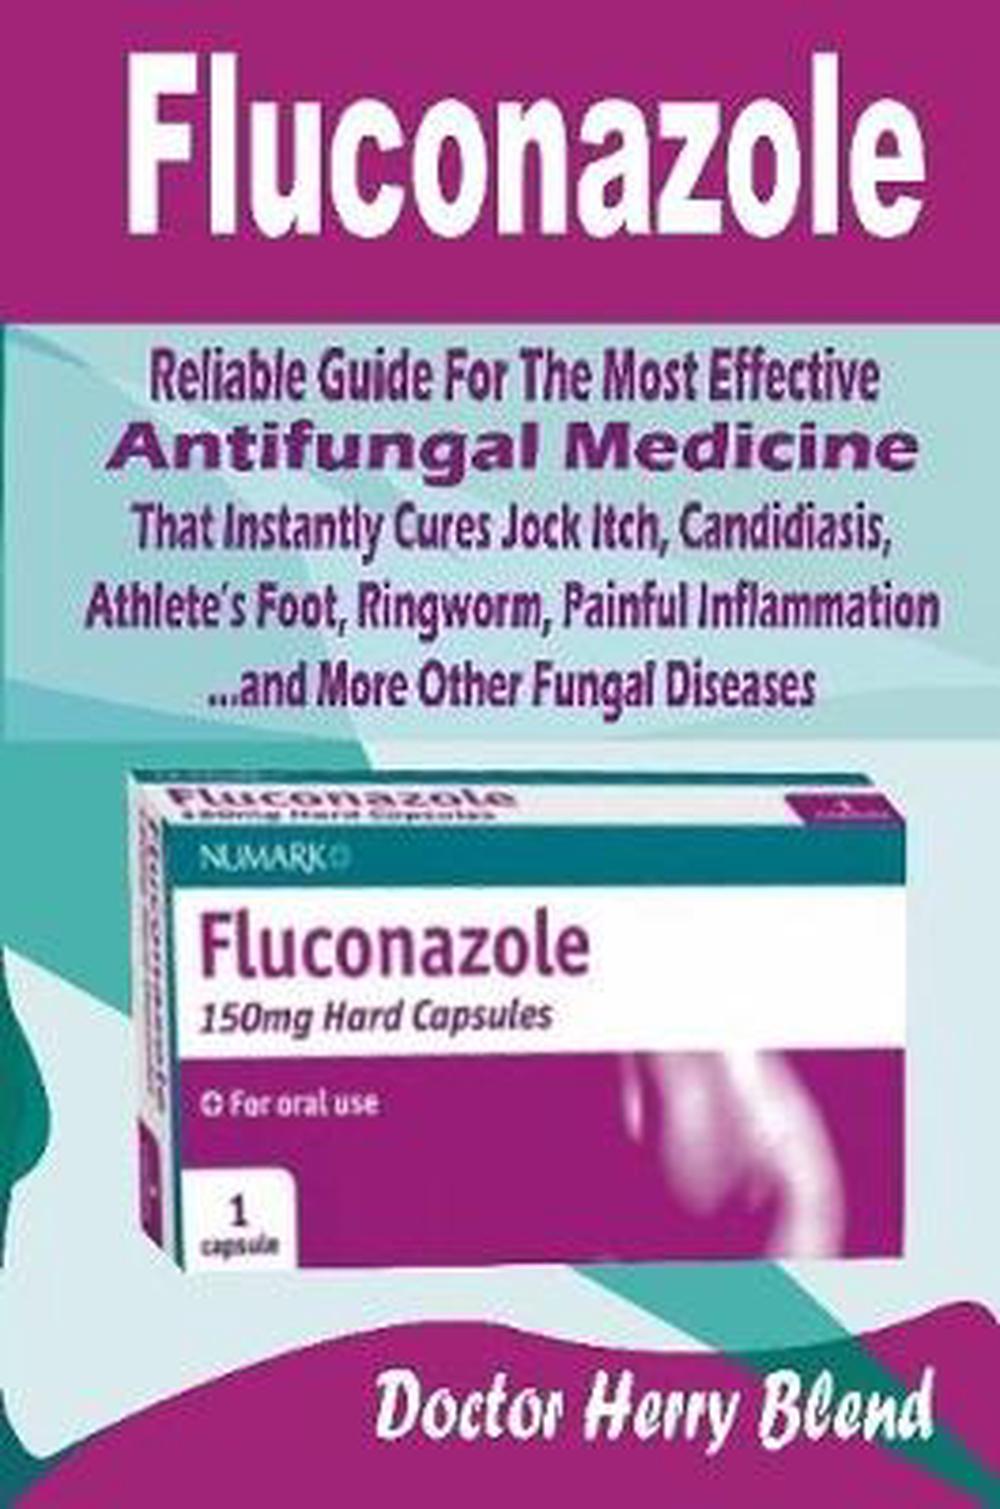 can fluconazole make you feel unwell